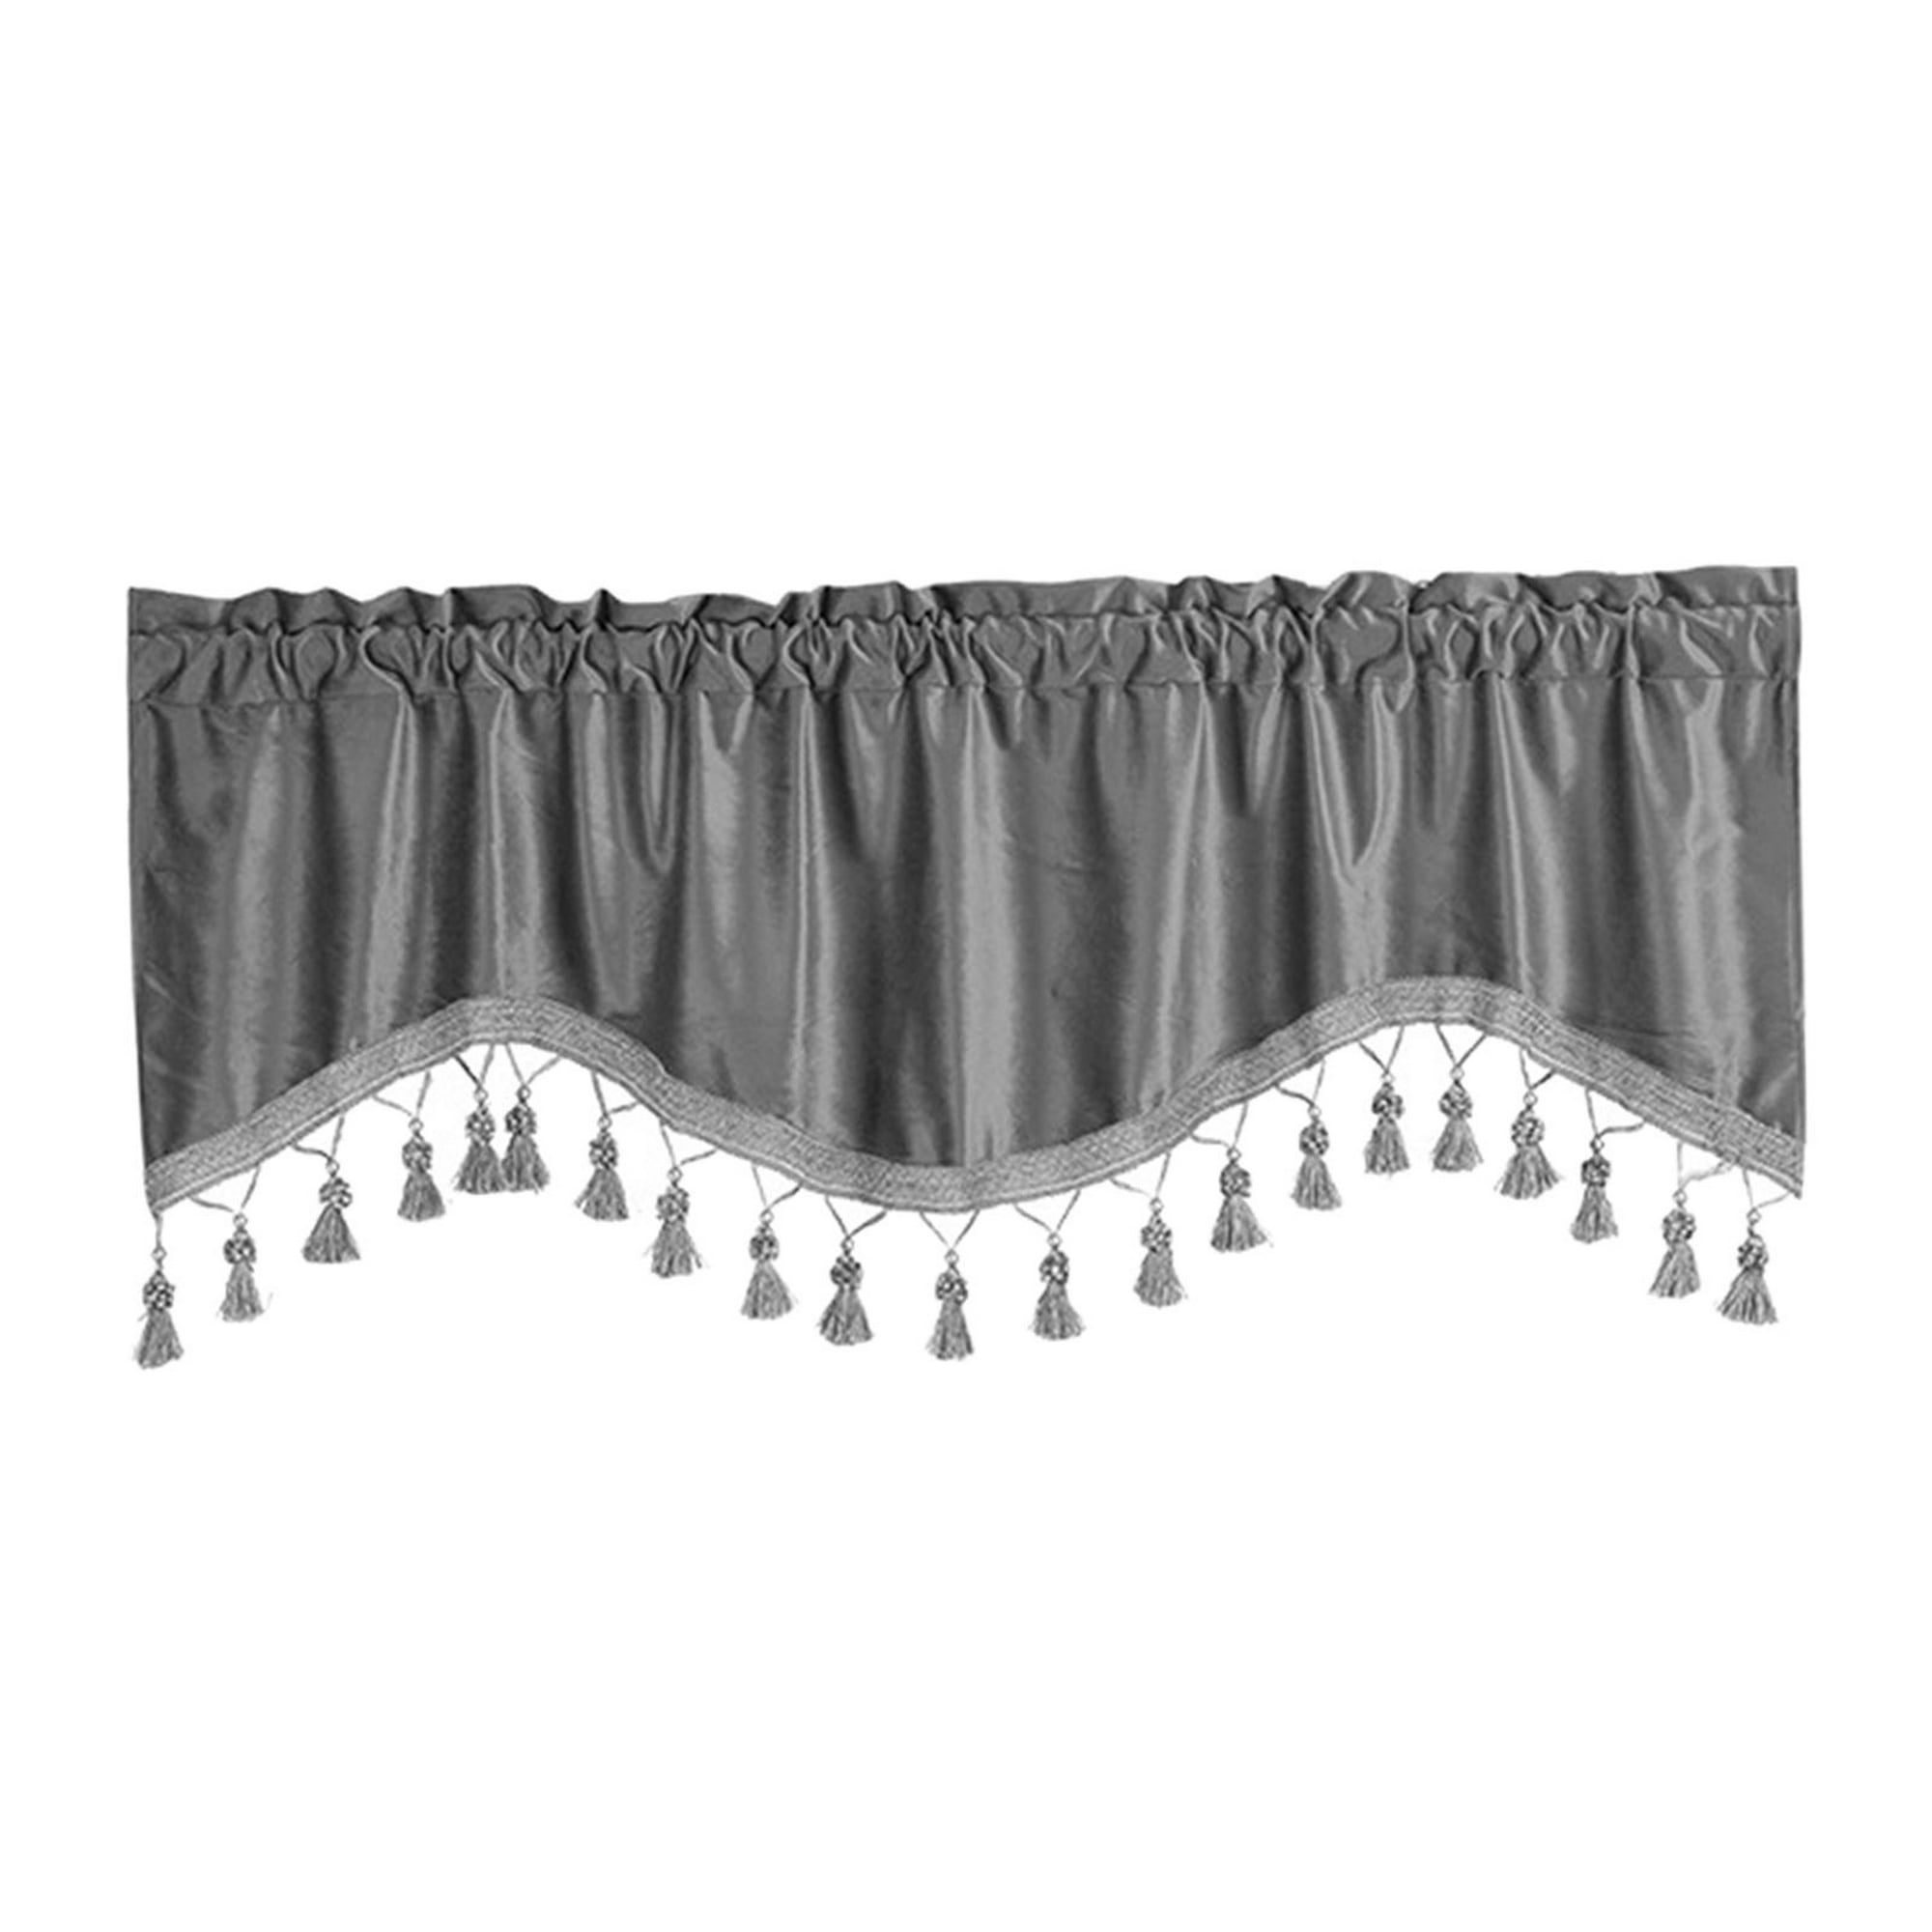  Cortinas cortas blancas y negras para ventanas pequeñas de 72  pulgadas de largo, colección de decoración de gaviotas, juego de 2 paneles  para decoración de ventana de sala de estar, 84